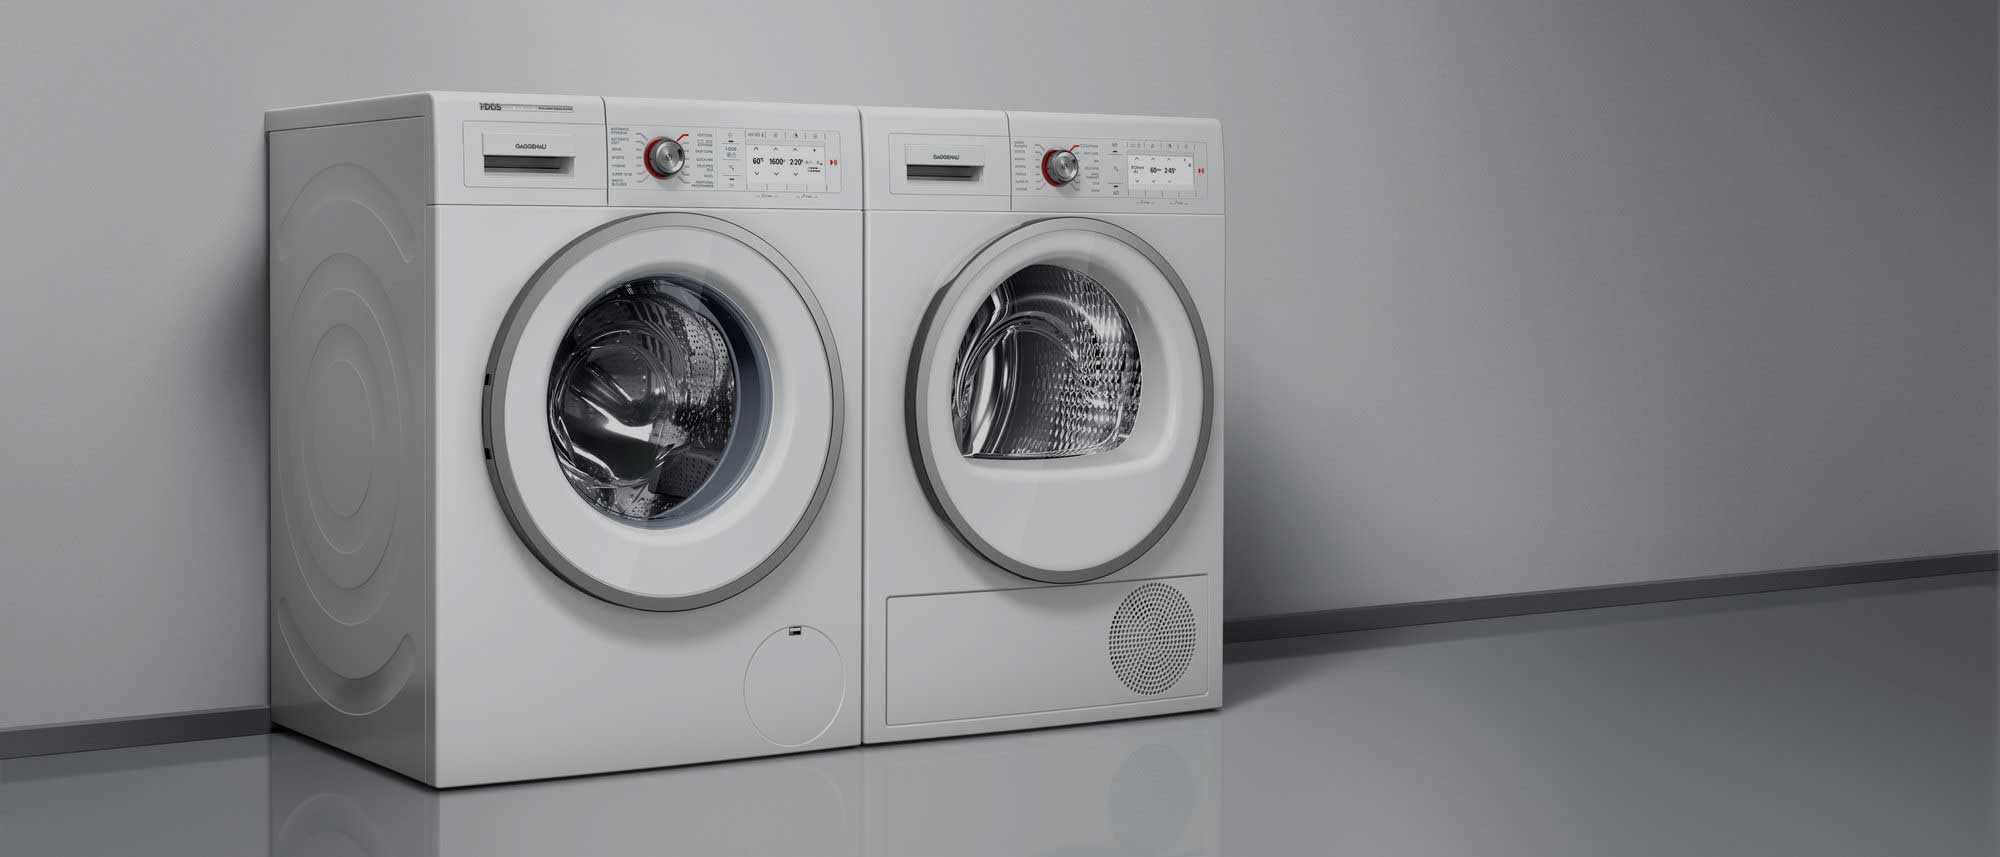 Gaggenau Washing Machines by FCI London